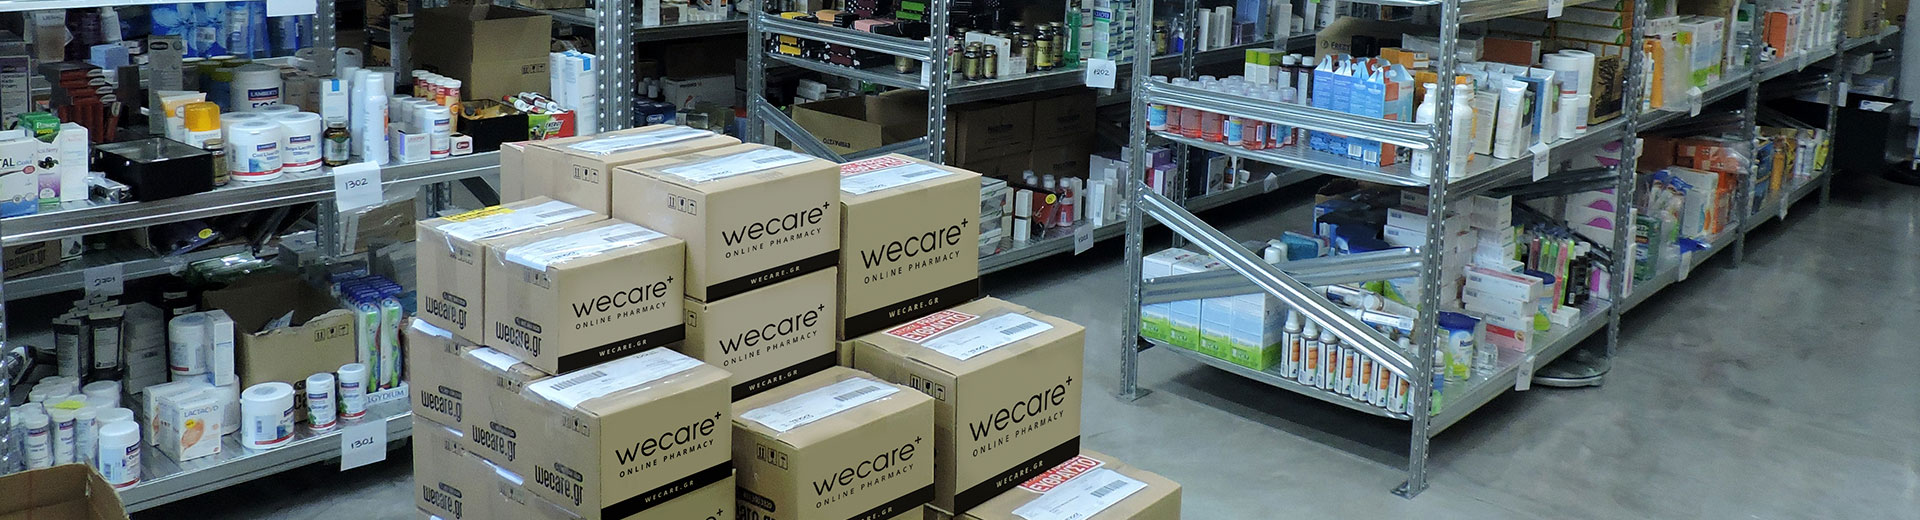 Wecare - Высокие стандарты хранения и обслуживания продукции